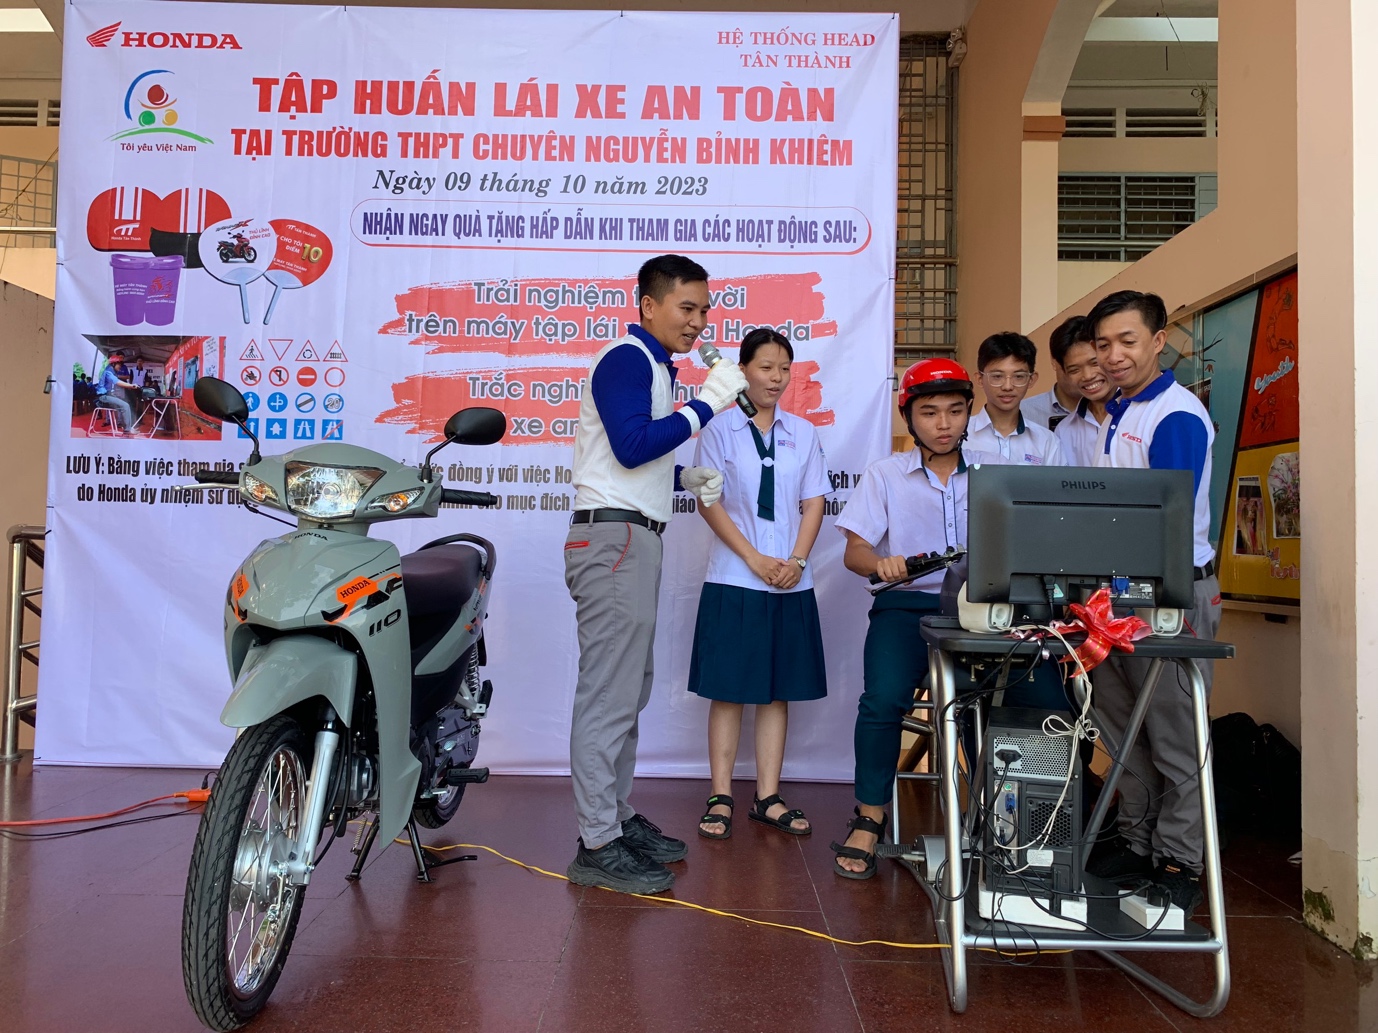  Honda Việt Nam tuyên dương các HEAD xuất sắc nhất trong hoạt động đào tạo An toàn giao thông Quý 3/2023 - Ảnh 2.